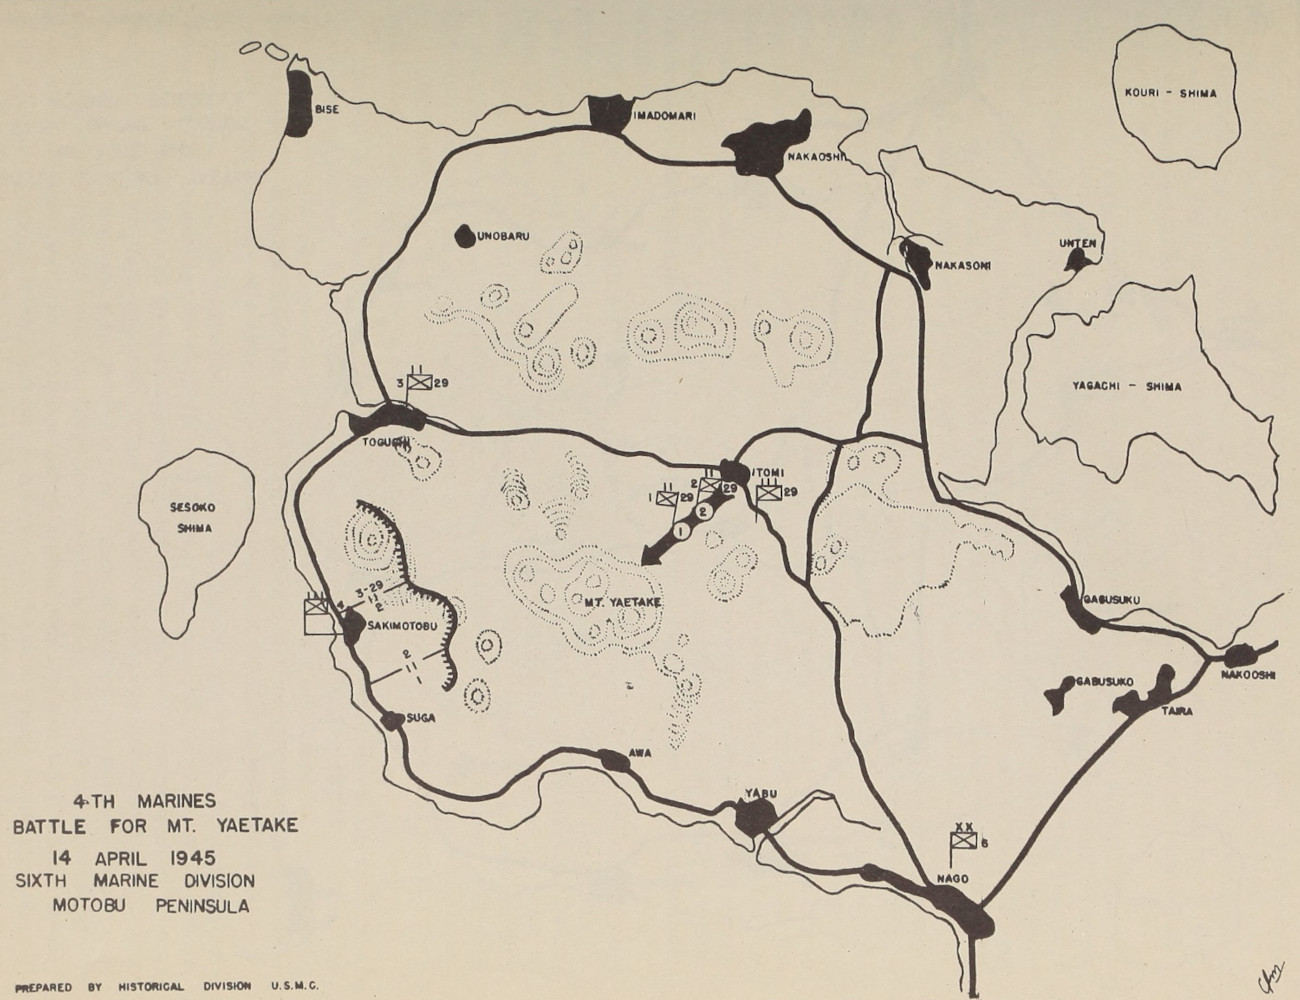 Map 3. 4th Marines Battle for Mt. Yaetake.